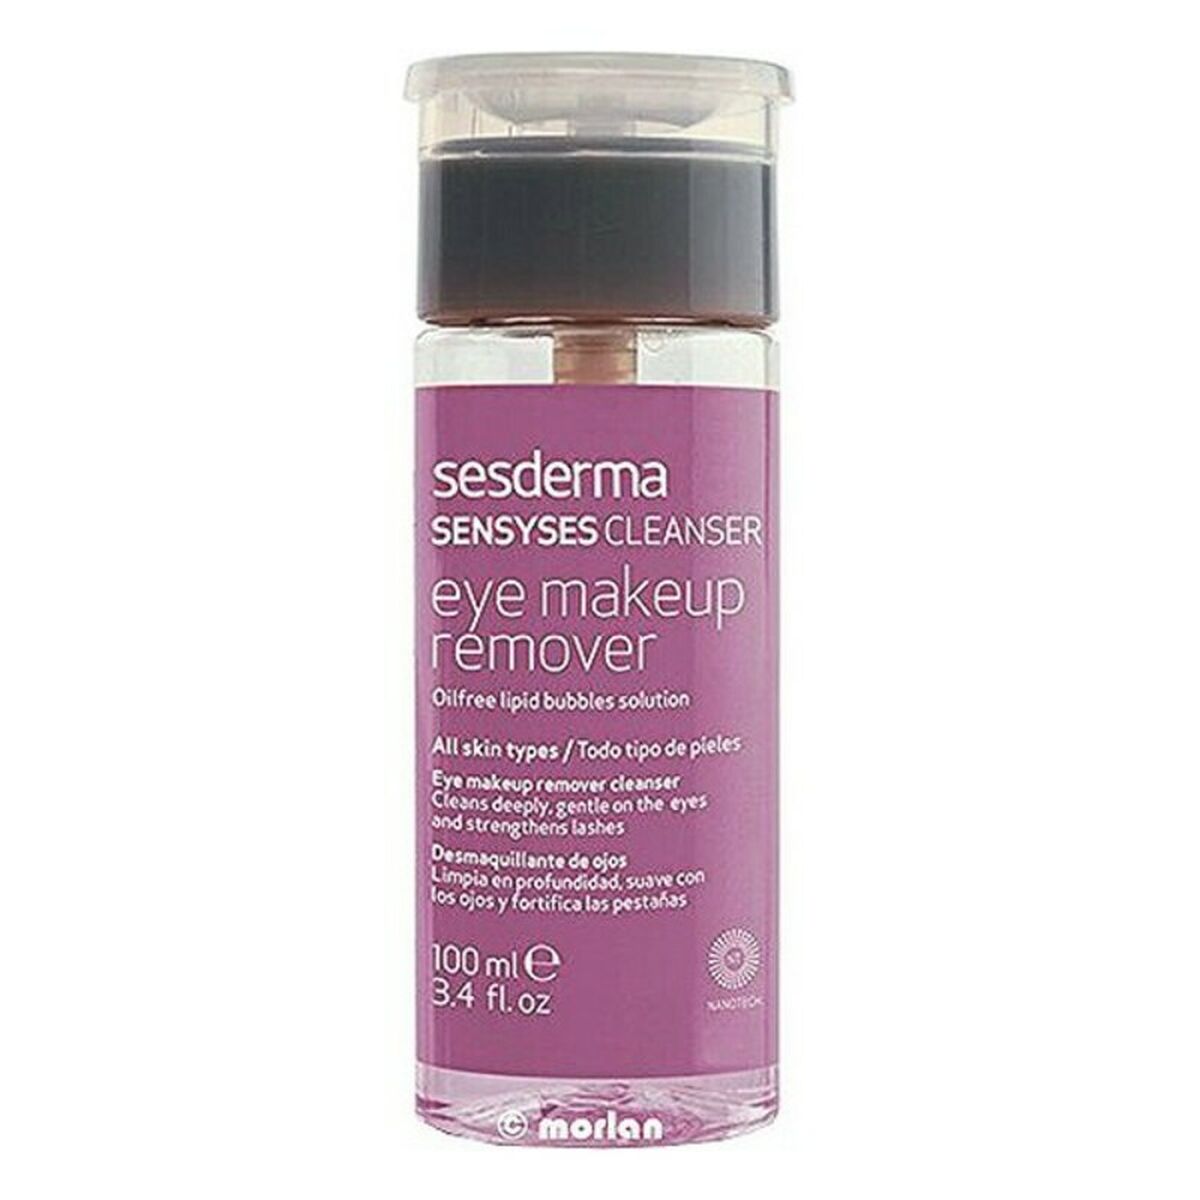 Eye Make Up Remover Sensyses Sesderma (100 ml)